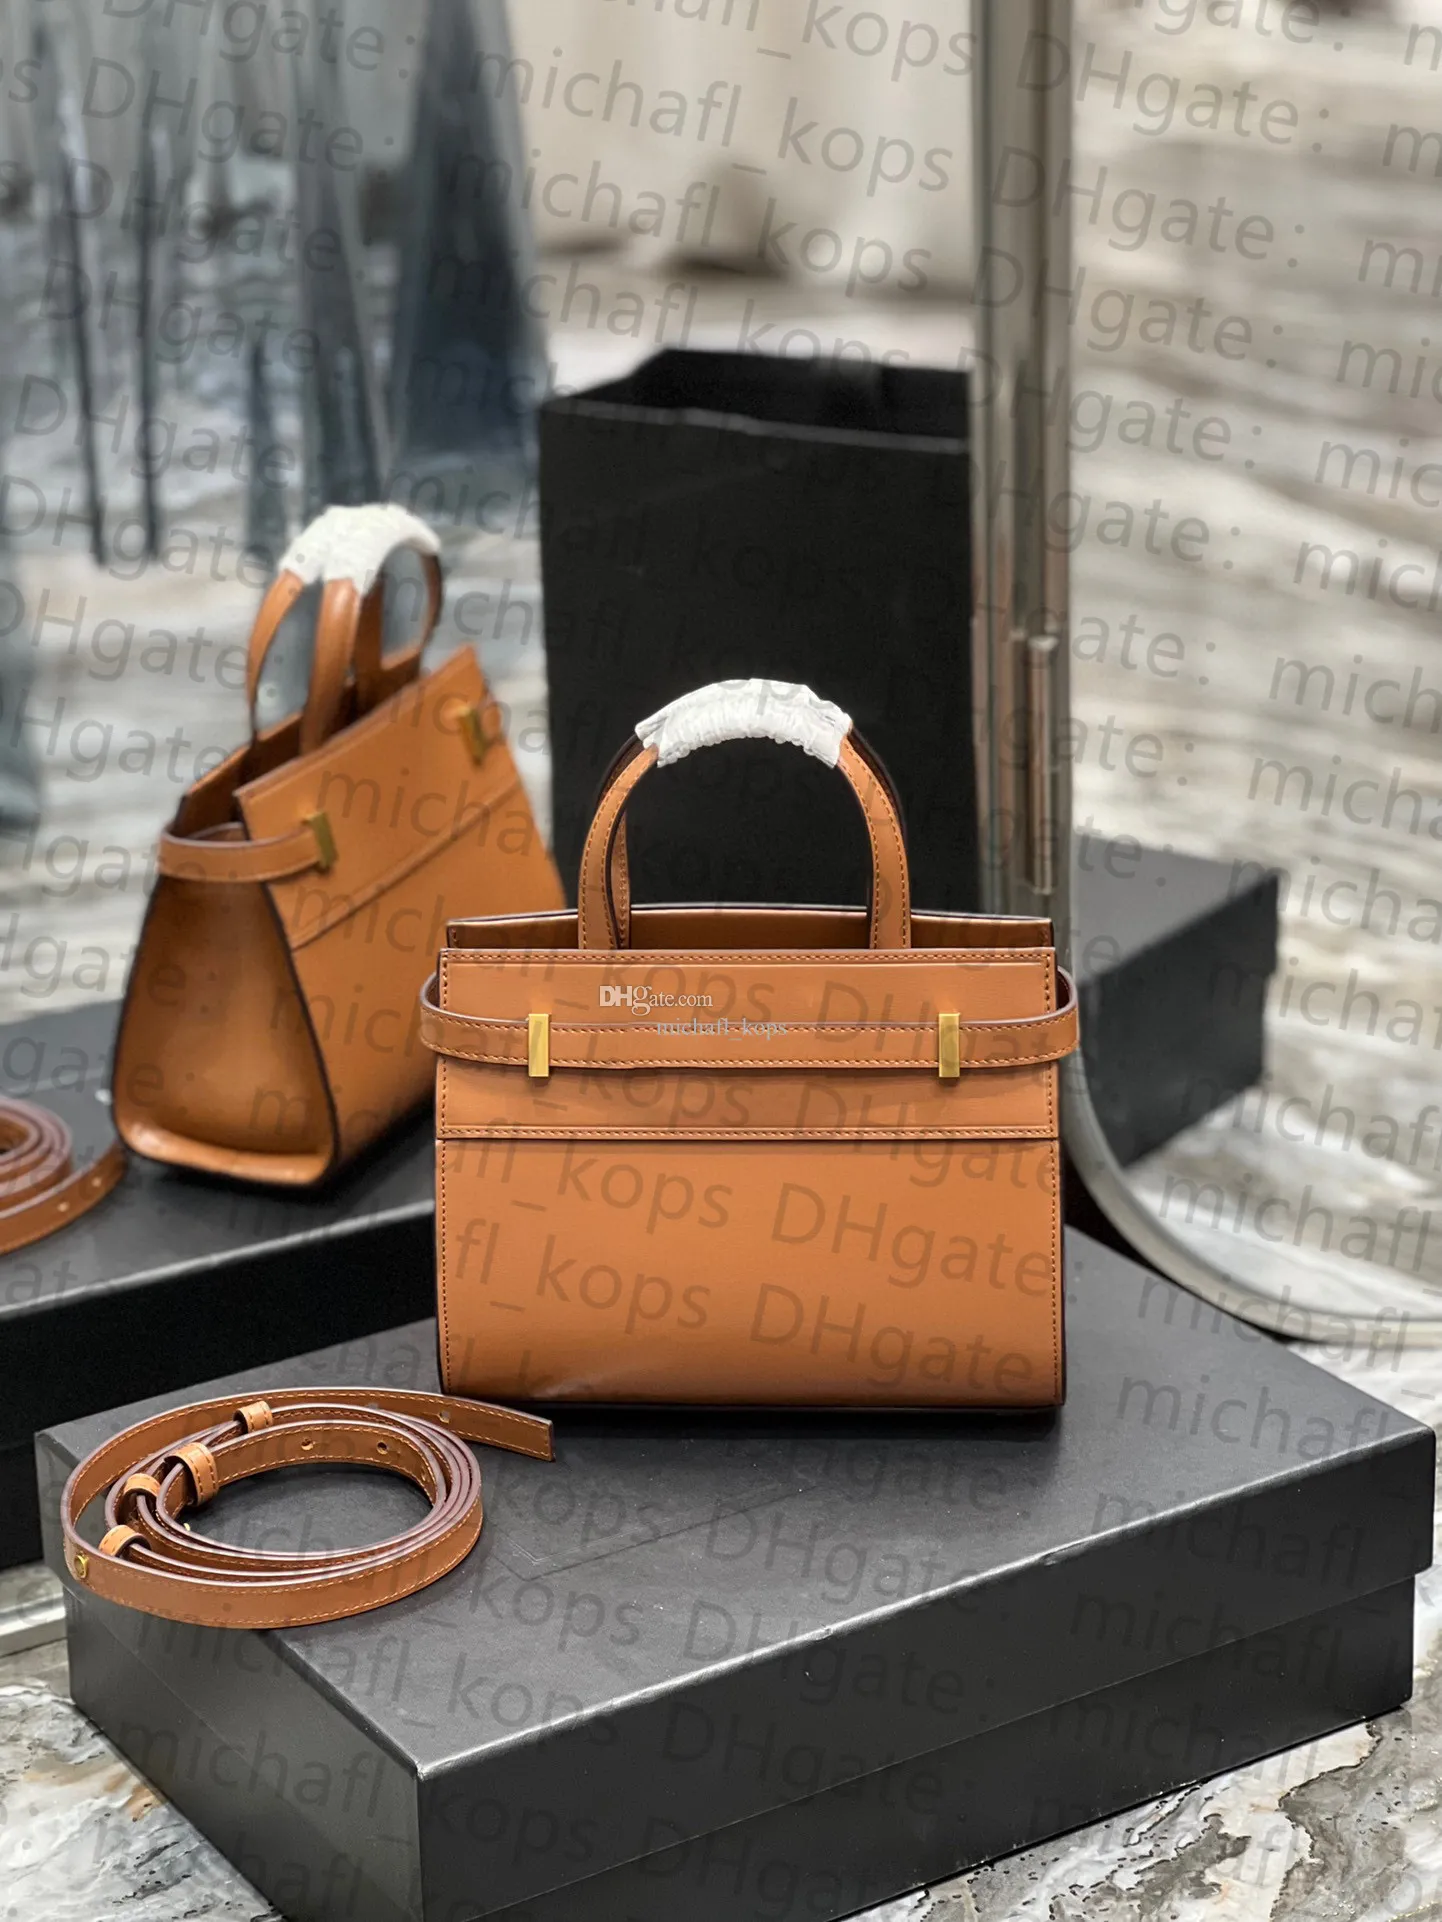 مانهاتن حمل حقيبة مرآة الجودة 10AAA جلدية حقيقية يدوي حقيبة يد تشمل مجموعة كاملة من الإكسسوارات حقائب مصممة فاخرة مع صندوق